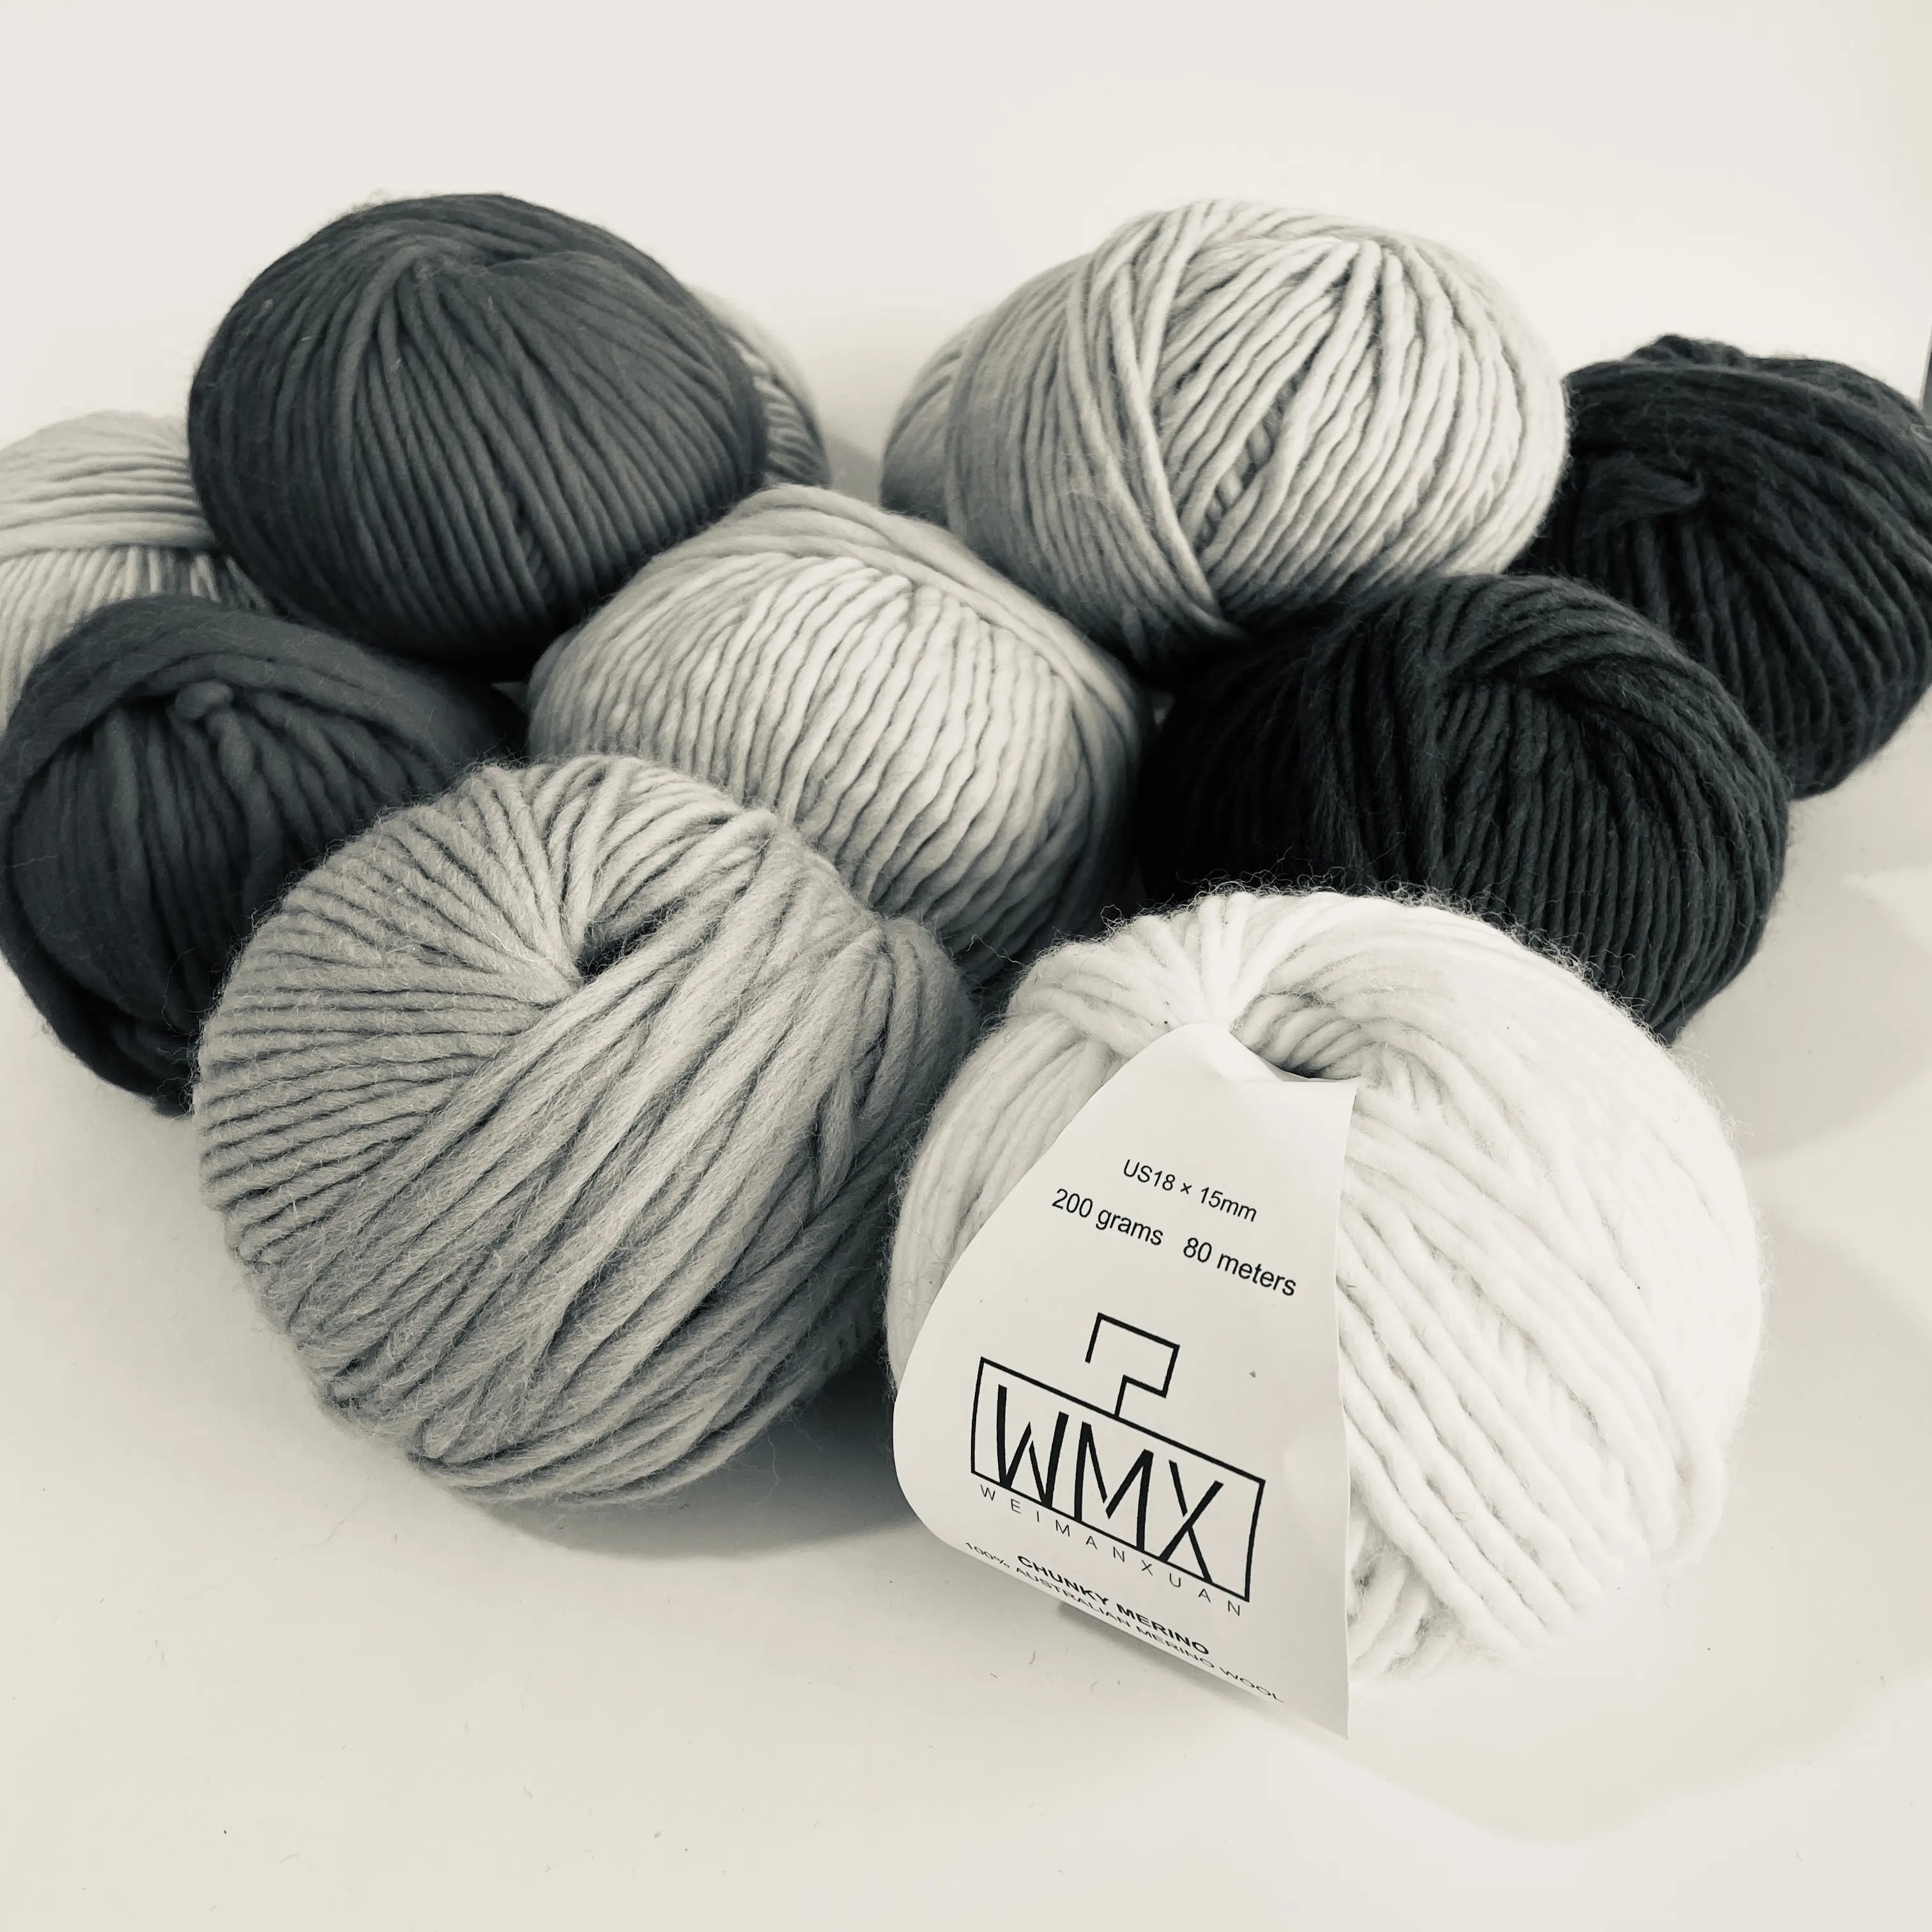 6mm Thick Australian Merino Wool Thinner Yarn for Hand Knitting Sweaters